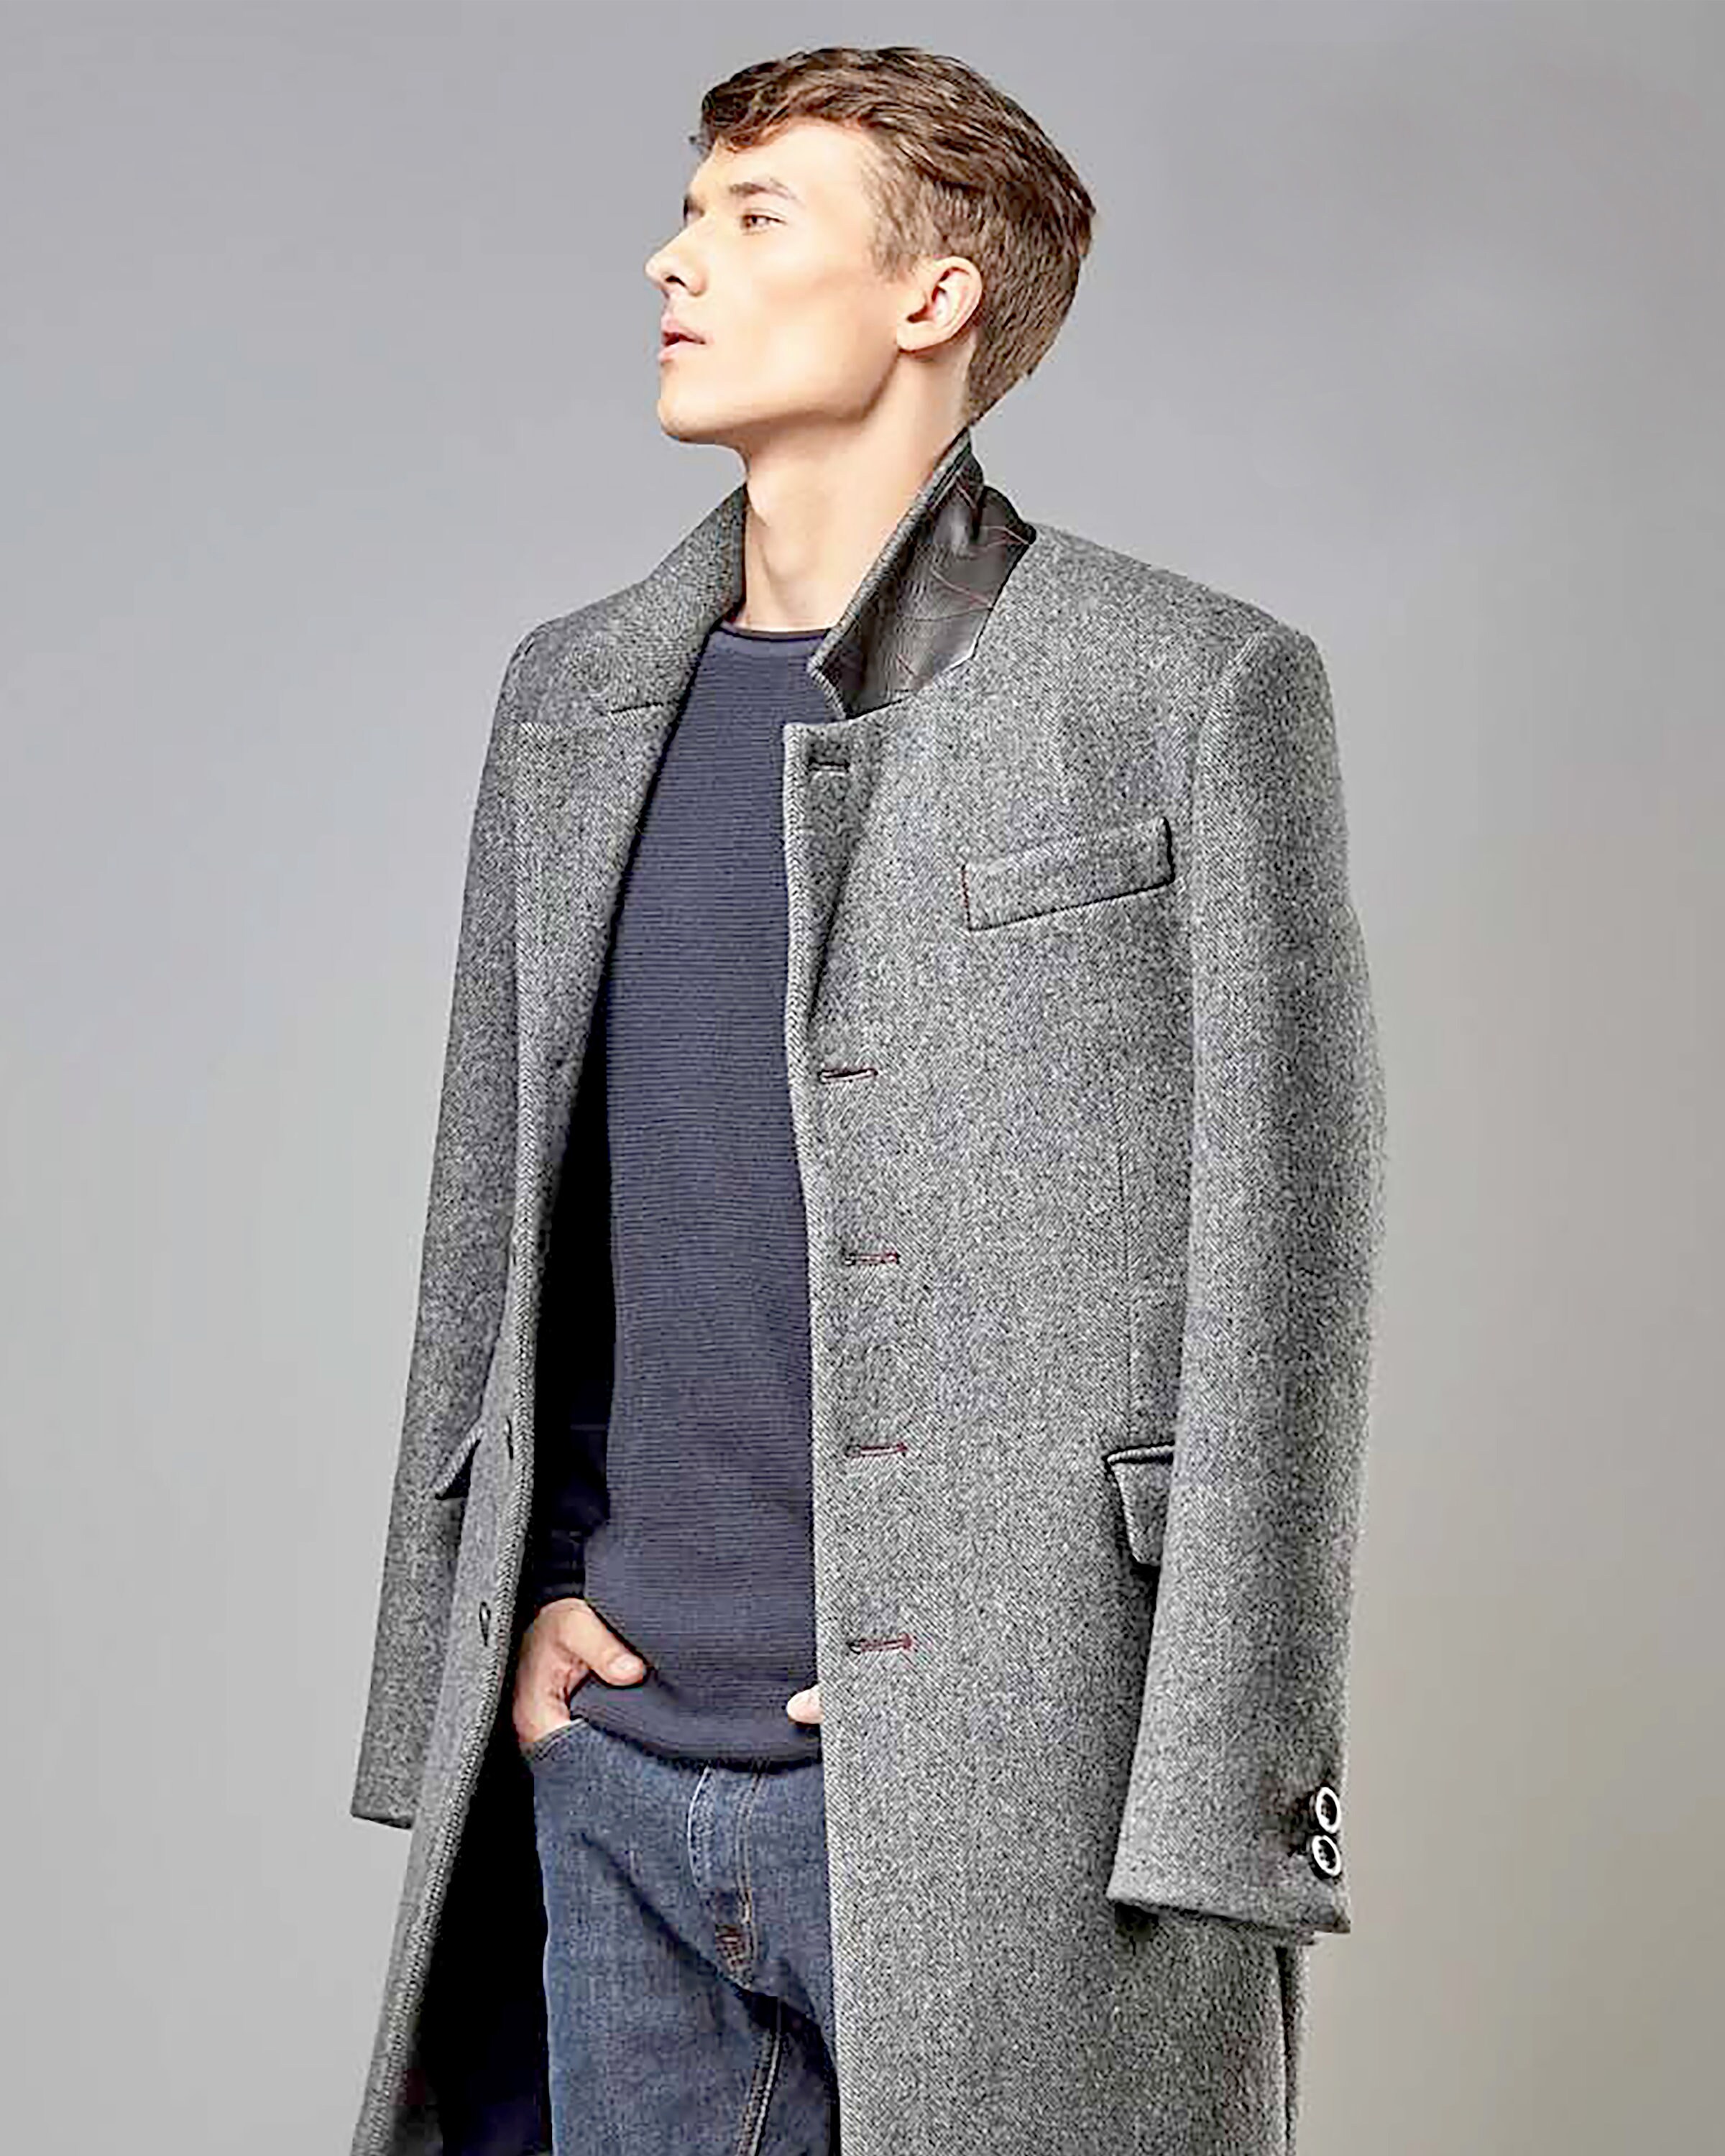 Man coat classic jacket style coat tailored coat Italian | Etsy